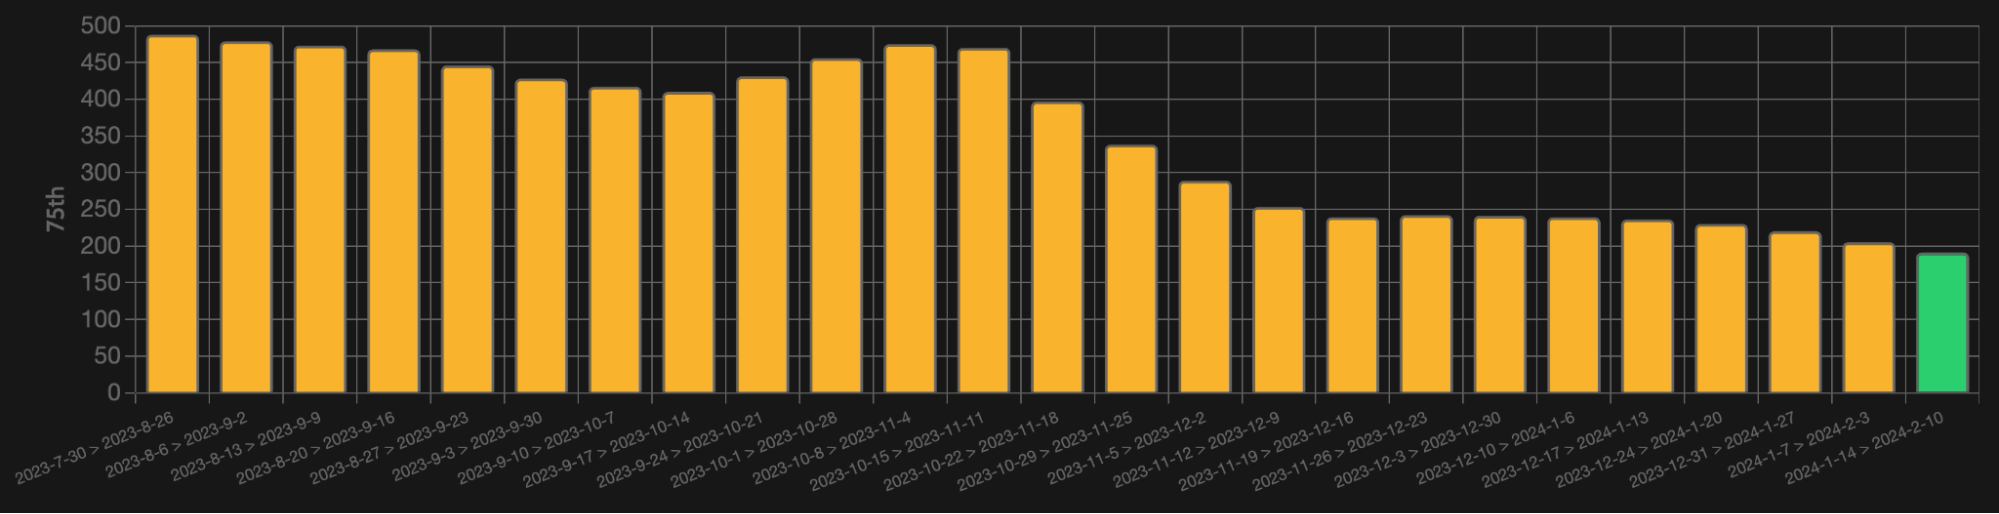 Zrzut ekranu panelu pokazujący wartość INP z danych RUM dla 75 centyla. Od lipca do sierpnia 2023 r. wartość INP jest niższa niż 500 milisekund, ale do połowy lutego 2024 r. wartość INP jest niższa niż 200 milisekund, co oznacza, że mieści się w progu „Dobra”.